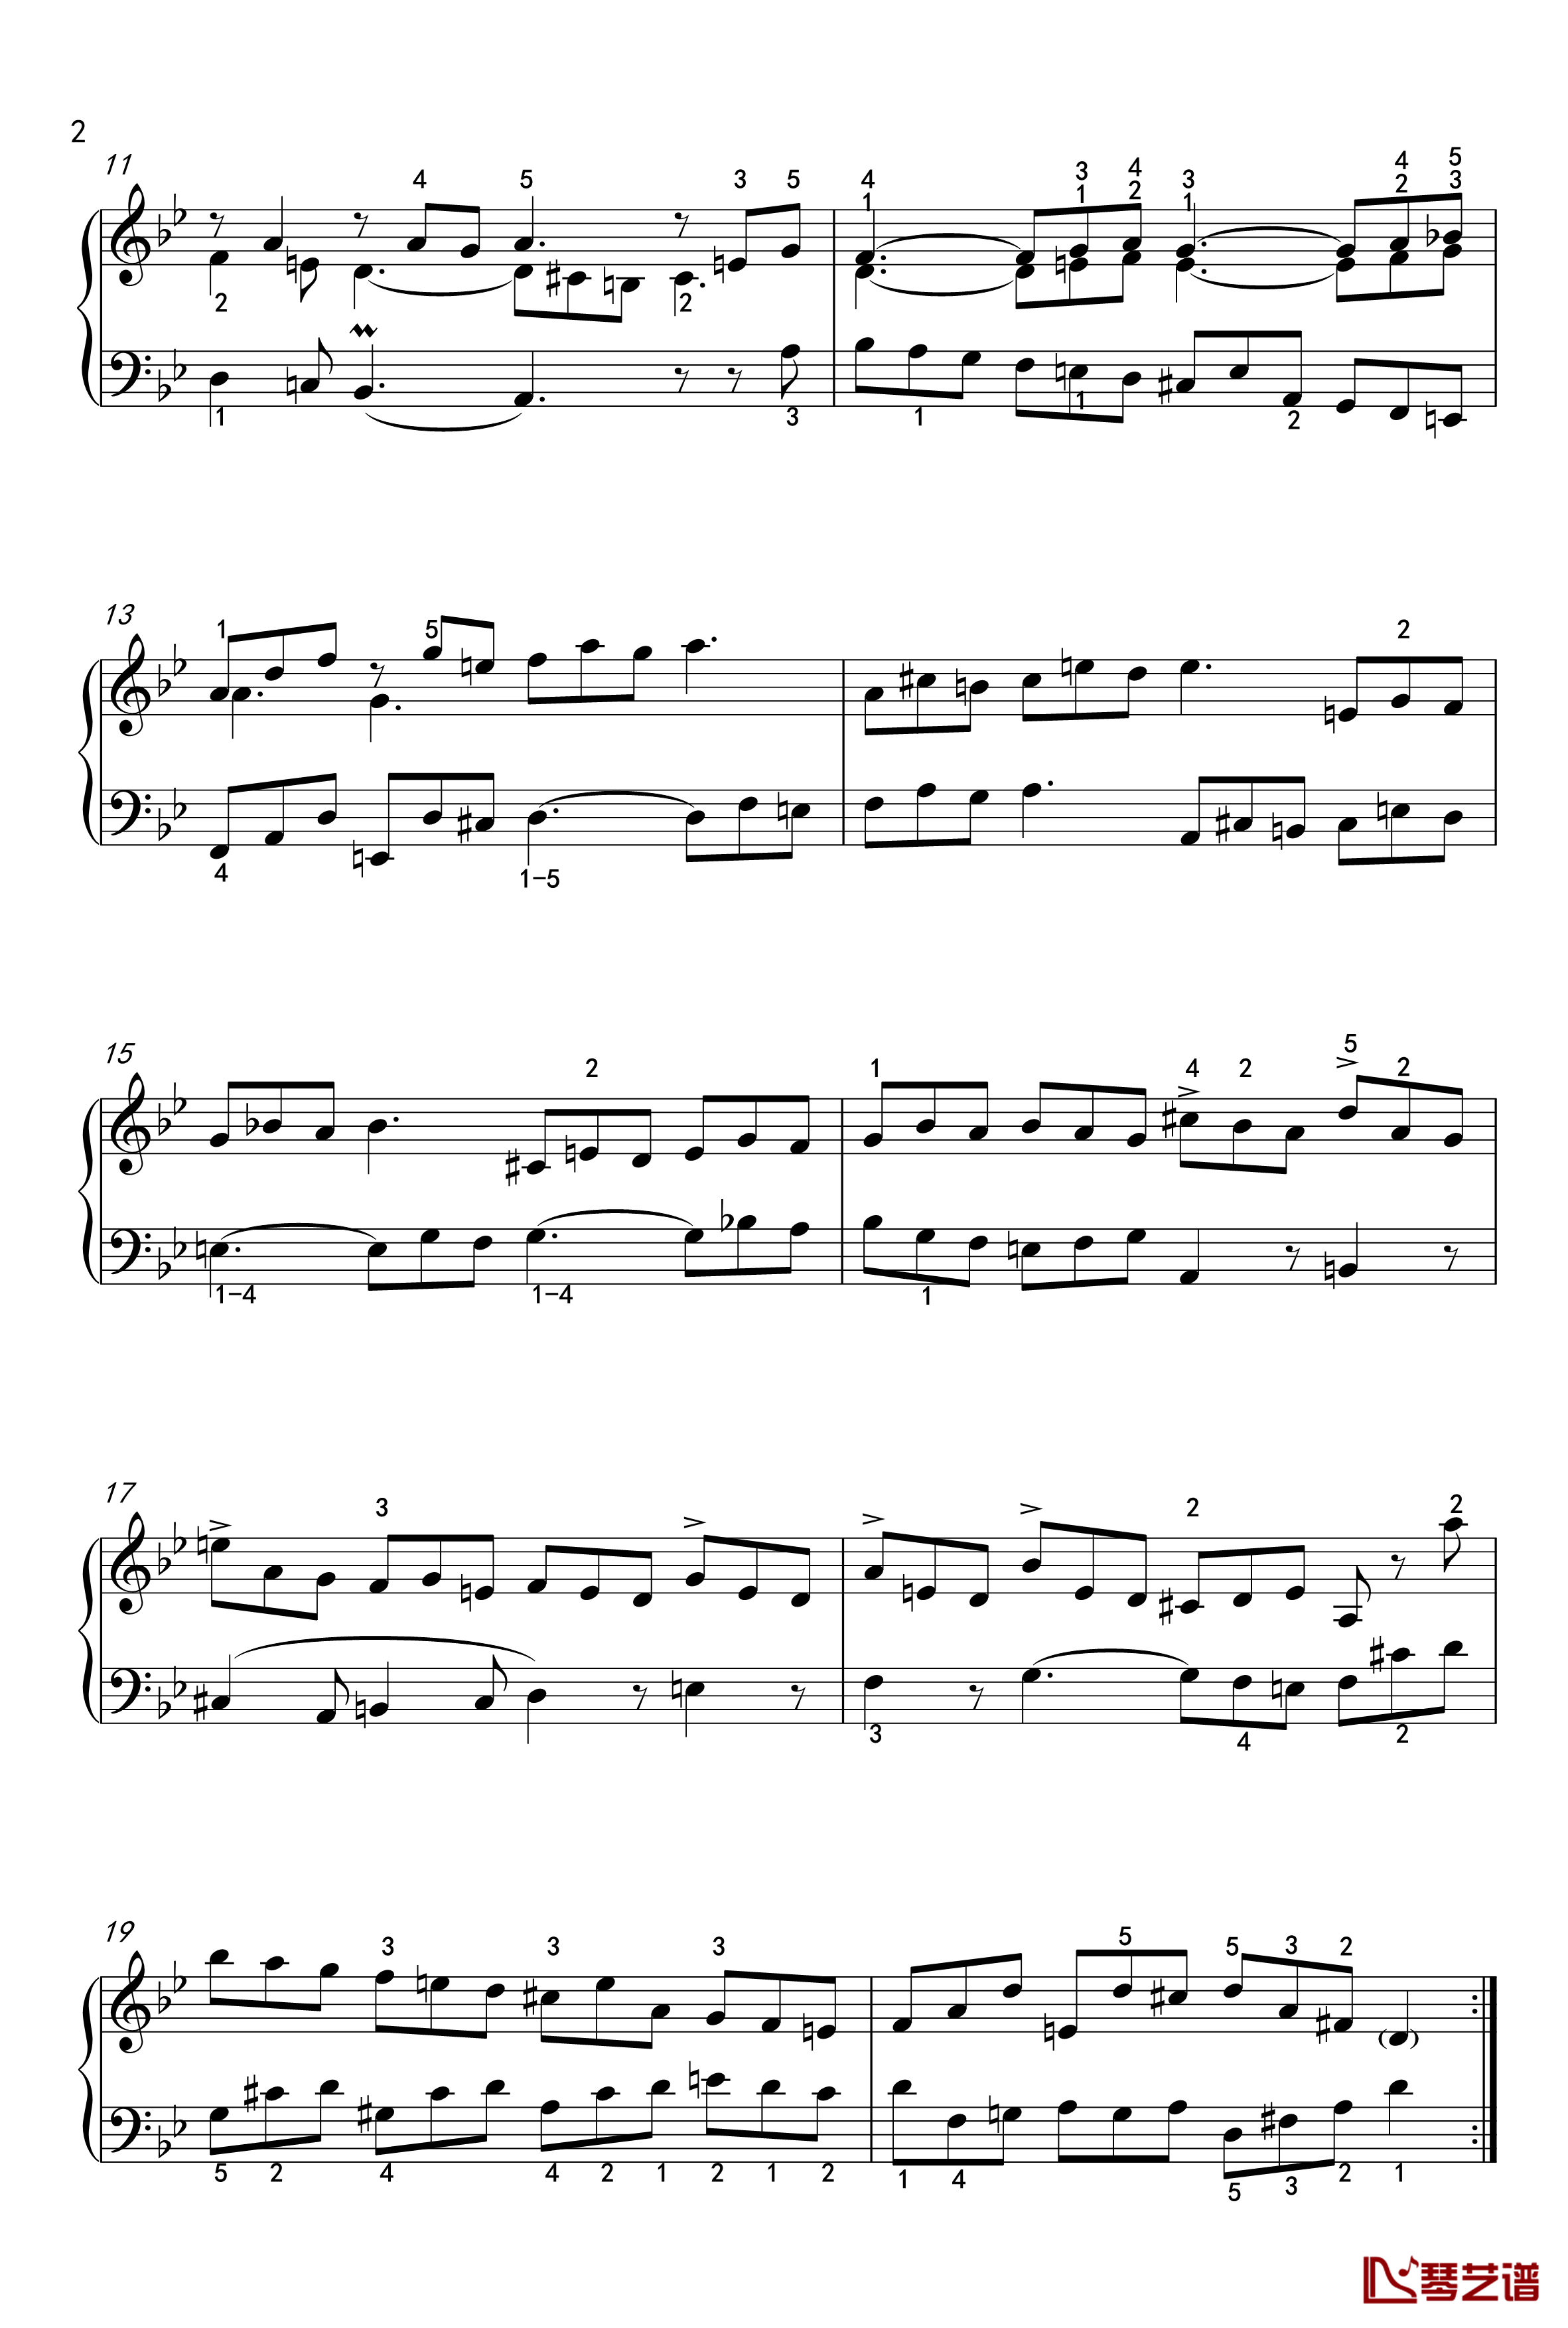 吉格舞曲钢琴谱-英国组曲-BWV-808-7-巴赫-P.E.Bach2